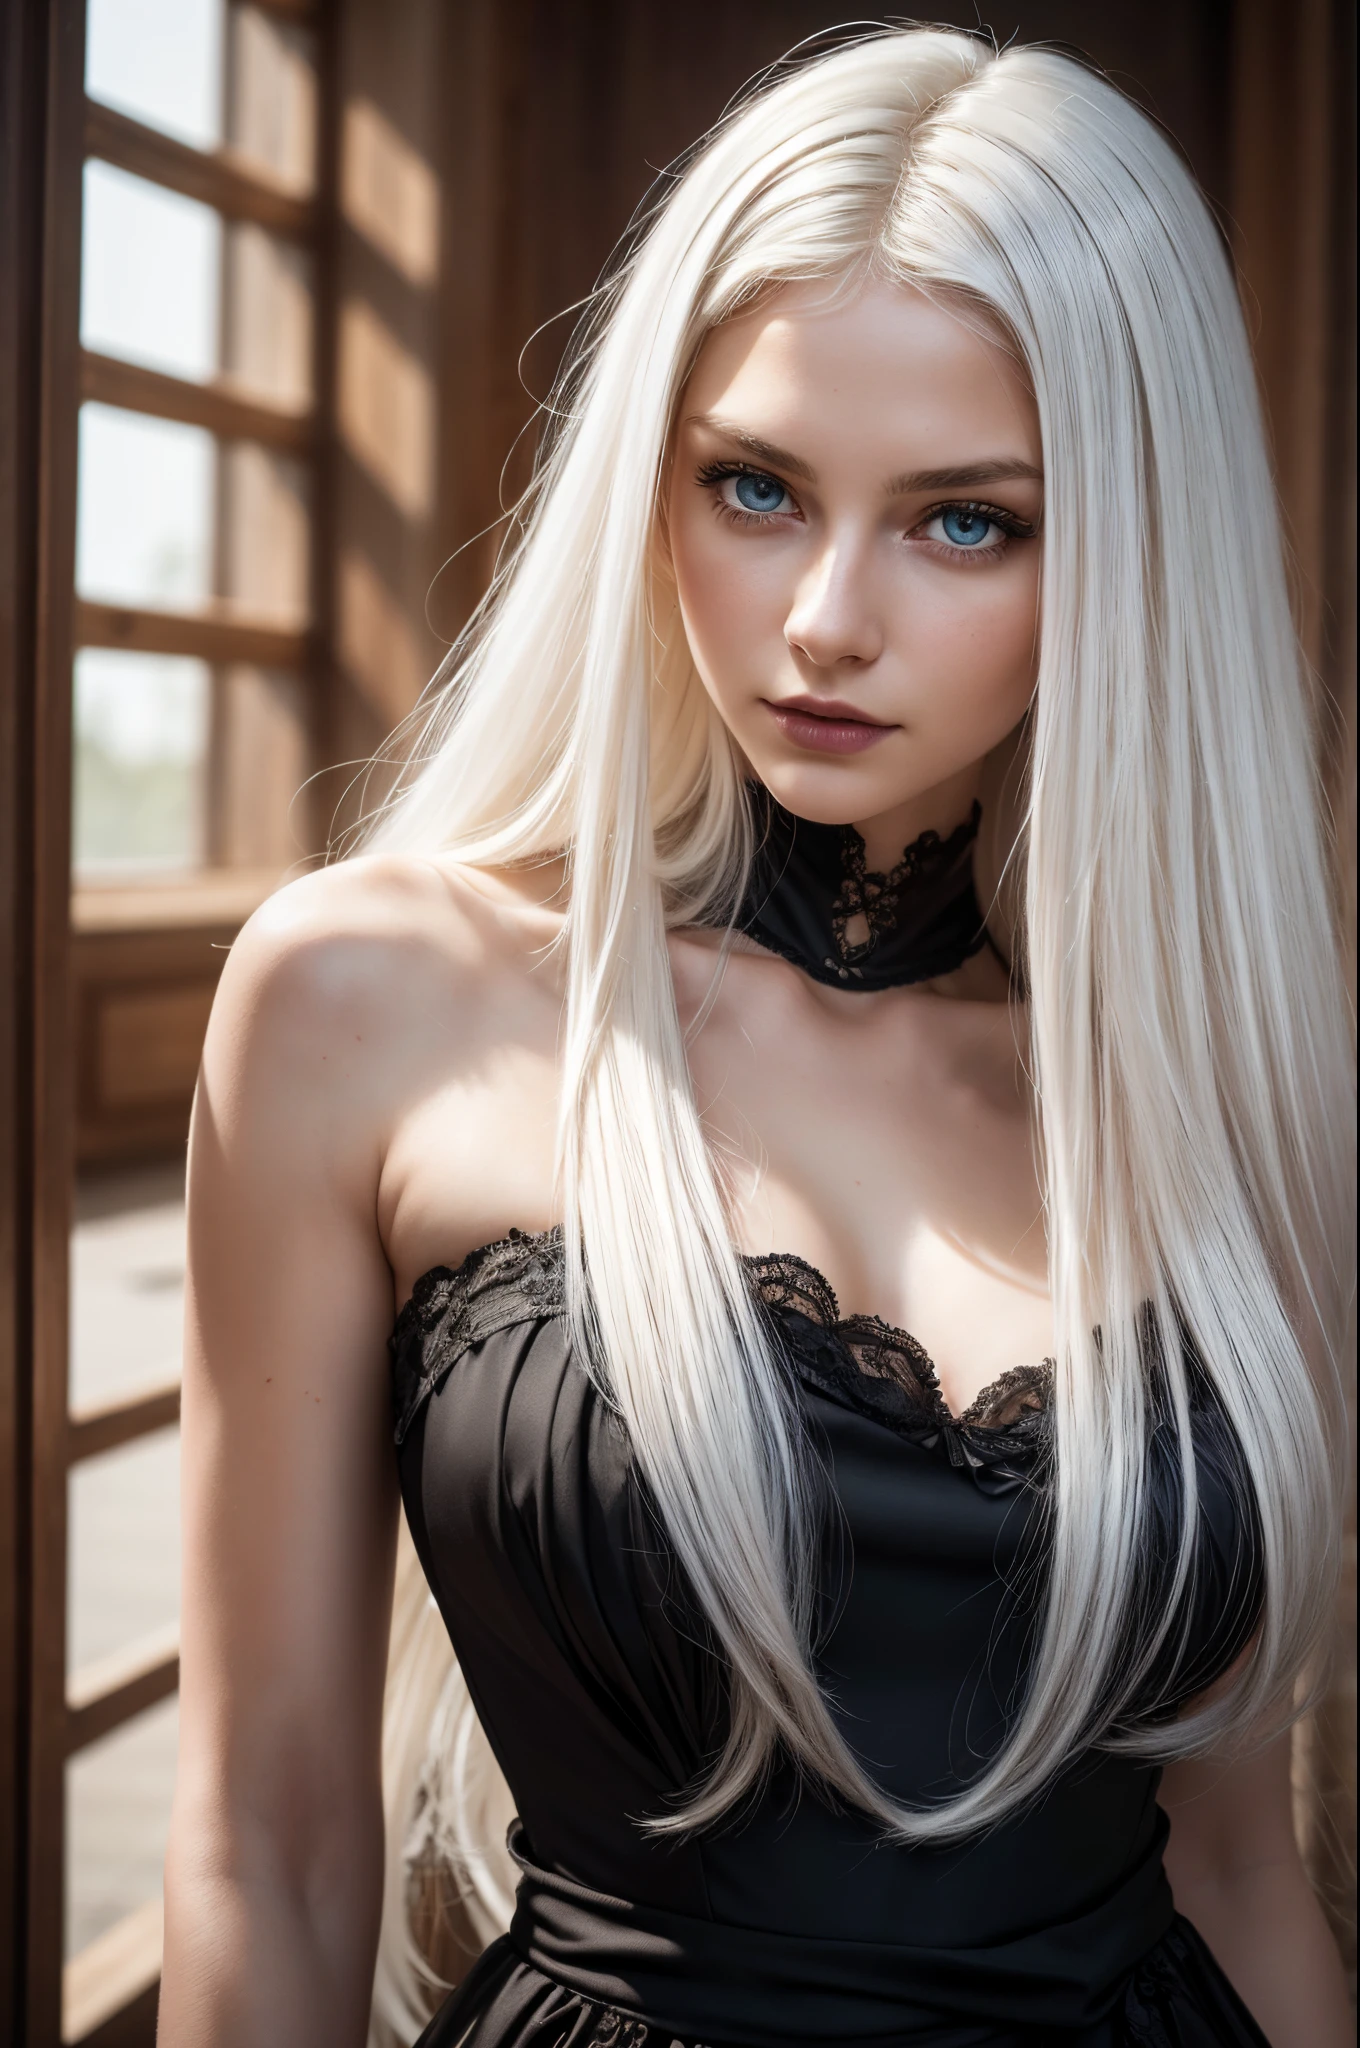 reinweißes Haar, reinweißes Haar, (Taillenlanges Haar), leuchtendes Haar, detailliertes Haar, blaue Augen, schöne Augen, extrem detaillierte Augen und Gesicht, Schöne, detaillierte Augen, ultra-detailliert, Licht im Gesicht, Helle Haut, ein 18 Jahre altes Mädchen, Meisterwerk, schönes europäisches Mädchen, (Schwarze gotische Dressium-Truhe mit vielen Details), (perfekter Körper), (weißes lockiges Haar 1.3), Außen, (Hauttextur:1.1), beste Qualität, Die ultra-Highres, Rohfoto, nikon d850, Hintergrundbeleuchtung, Felgenlicht, helles Sonnenlicht, Filmkorn:1.2, (warmer Farbton, warmer Ton:1.2), (farbiges Foto)